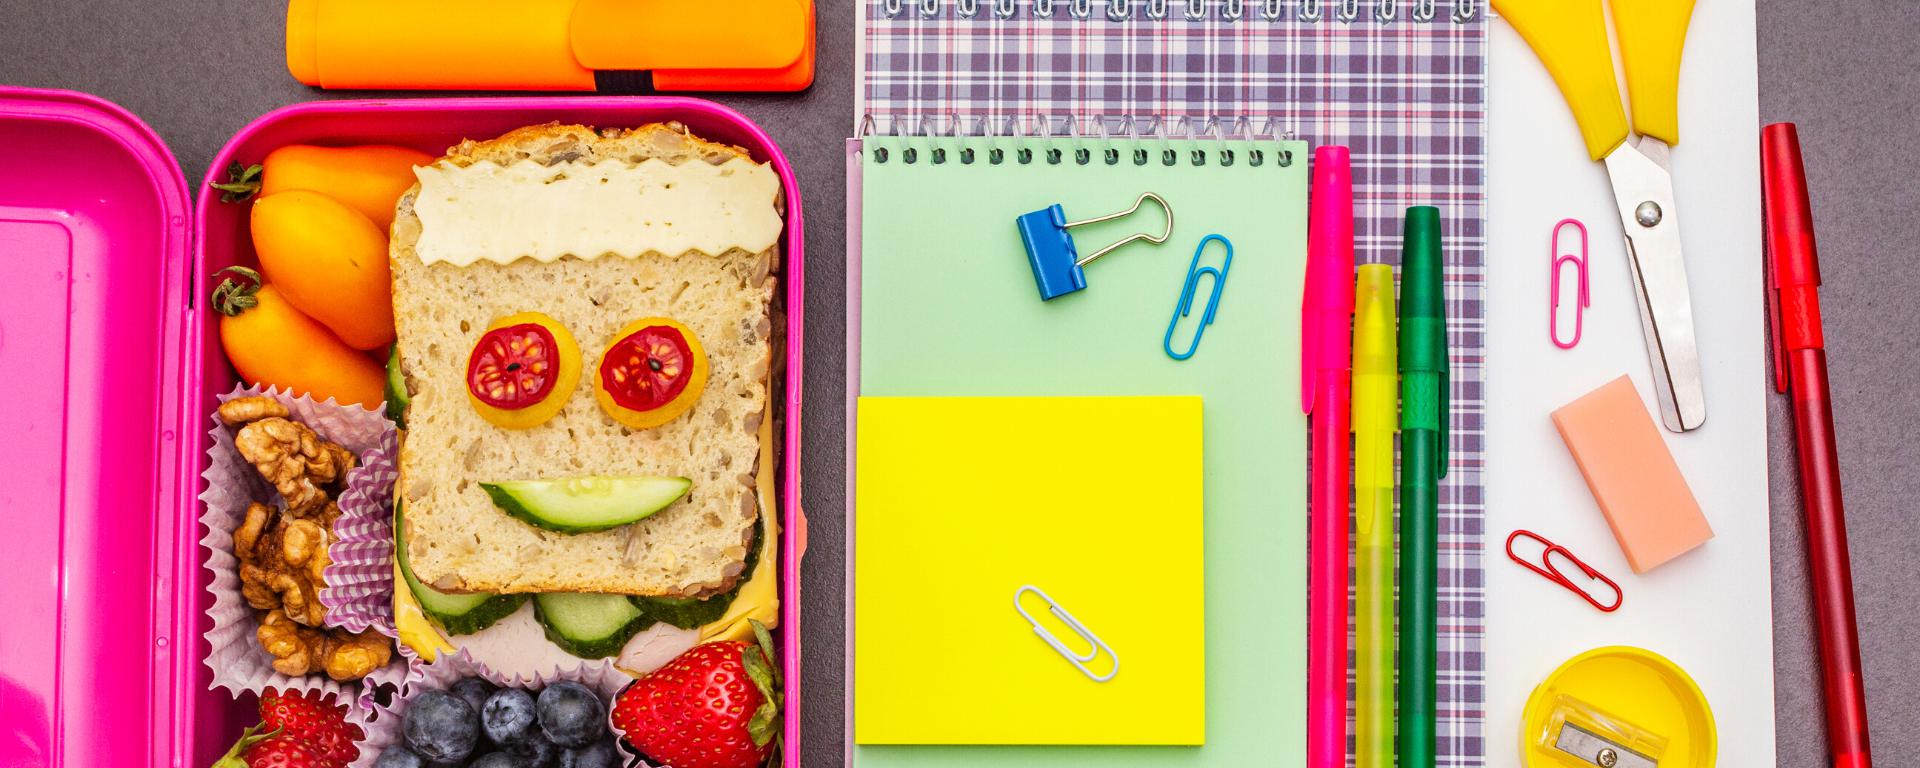 Loncheras saludables: consejos y ejemplos para elegir bien los alimentos  para el día de escuela de tus hijos, Regreso al colegio, Inicio de clases, Comida saludable, Merienda